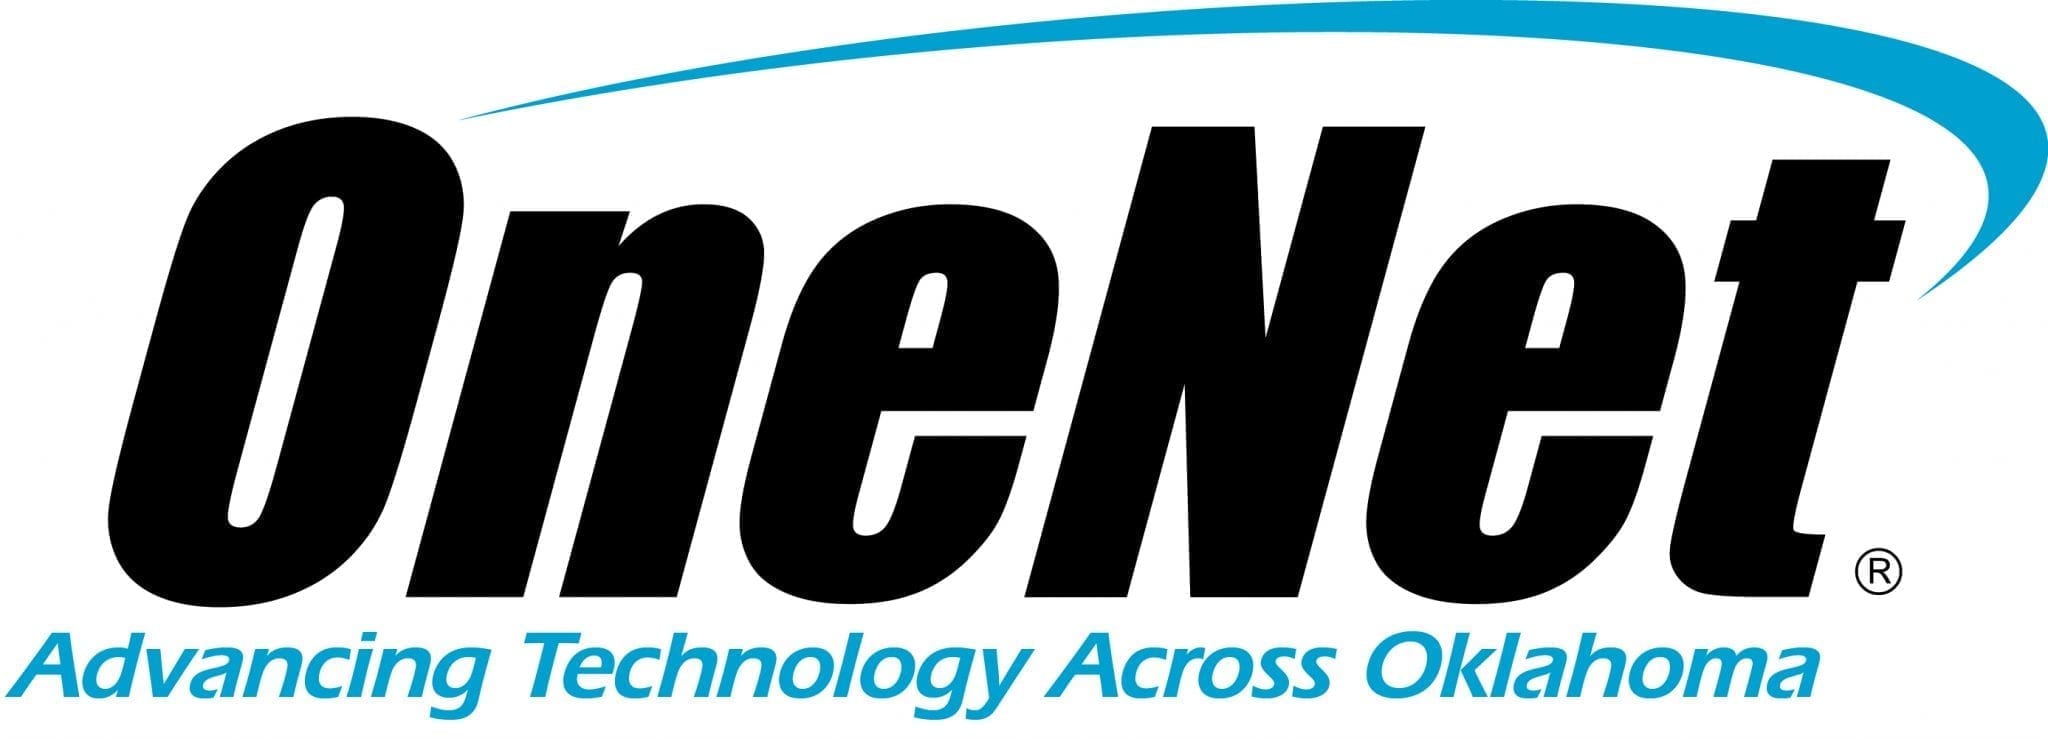 OneNet logo